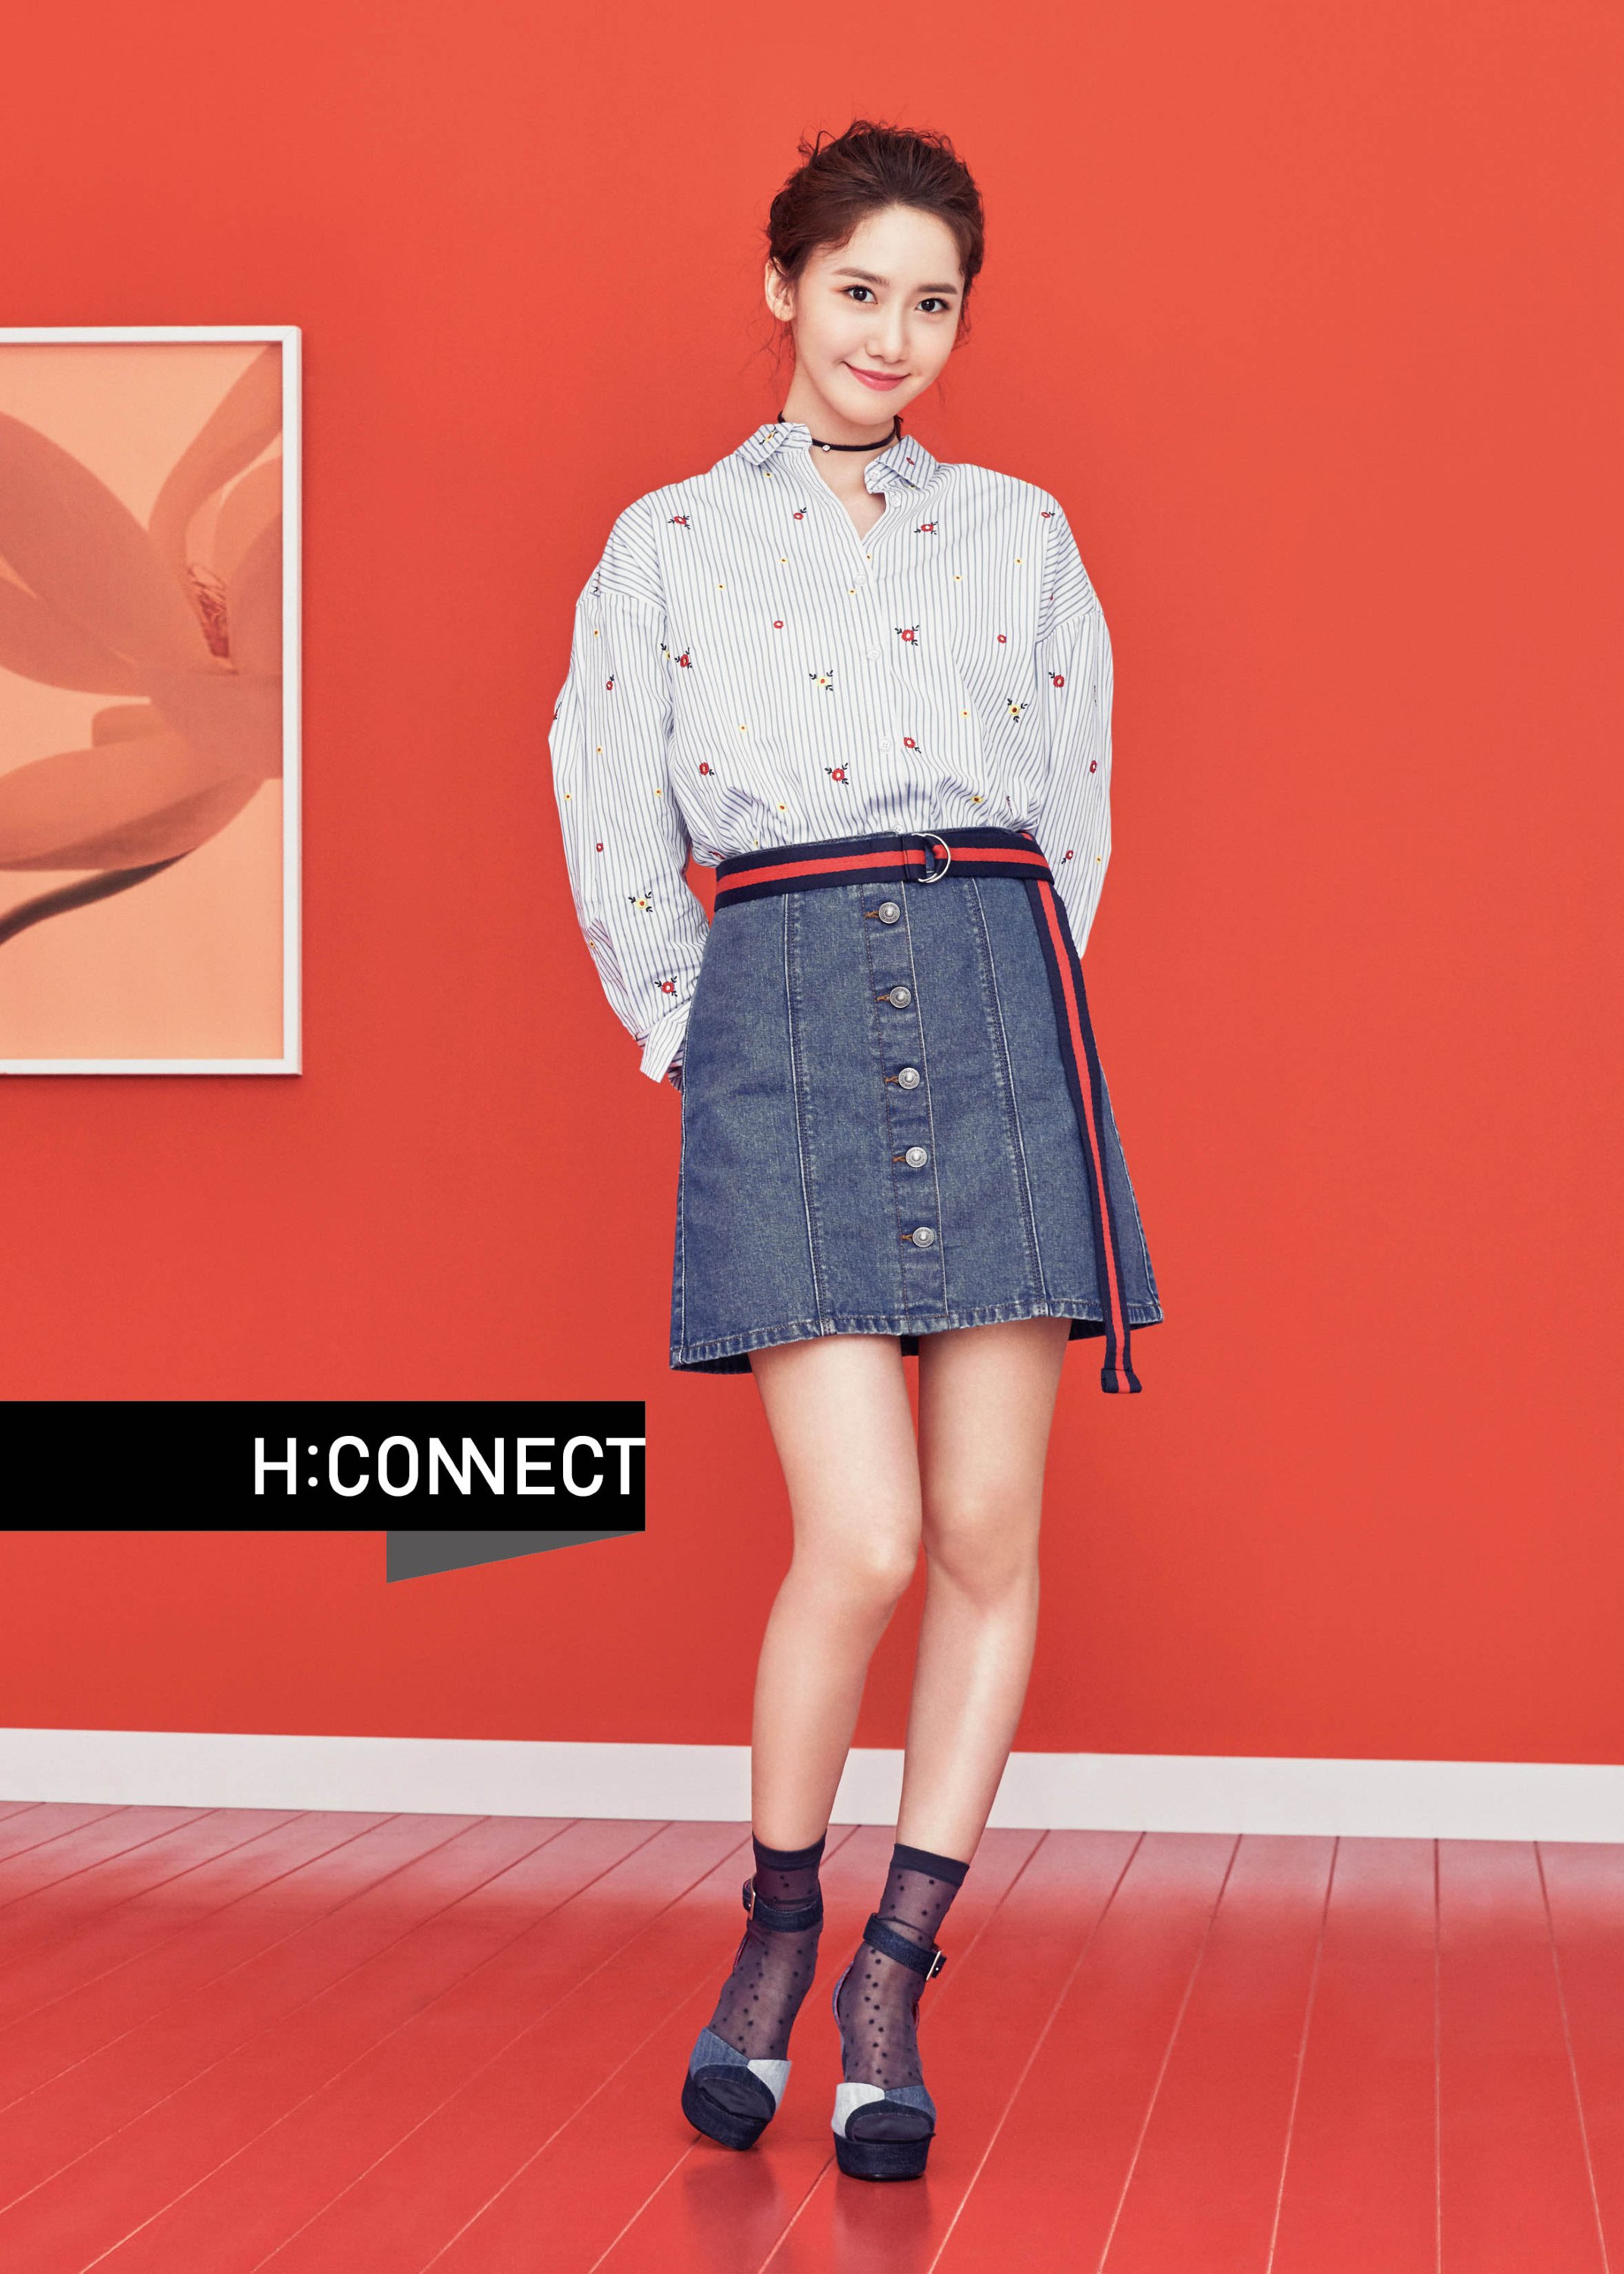 [OTHER][27-07-2015]YoonA trở thành người mẫu mới cho dòng thời trang "H:CONNECT" - Page 7 0oVuAkUMfs-3000x3000